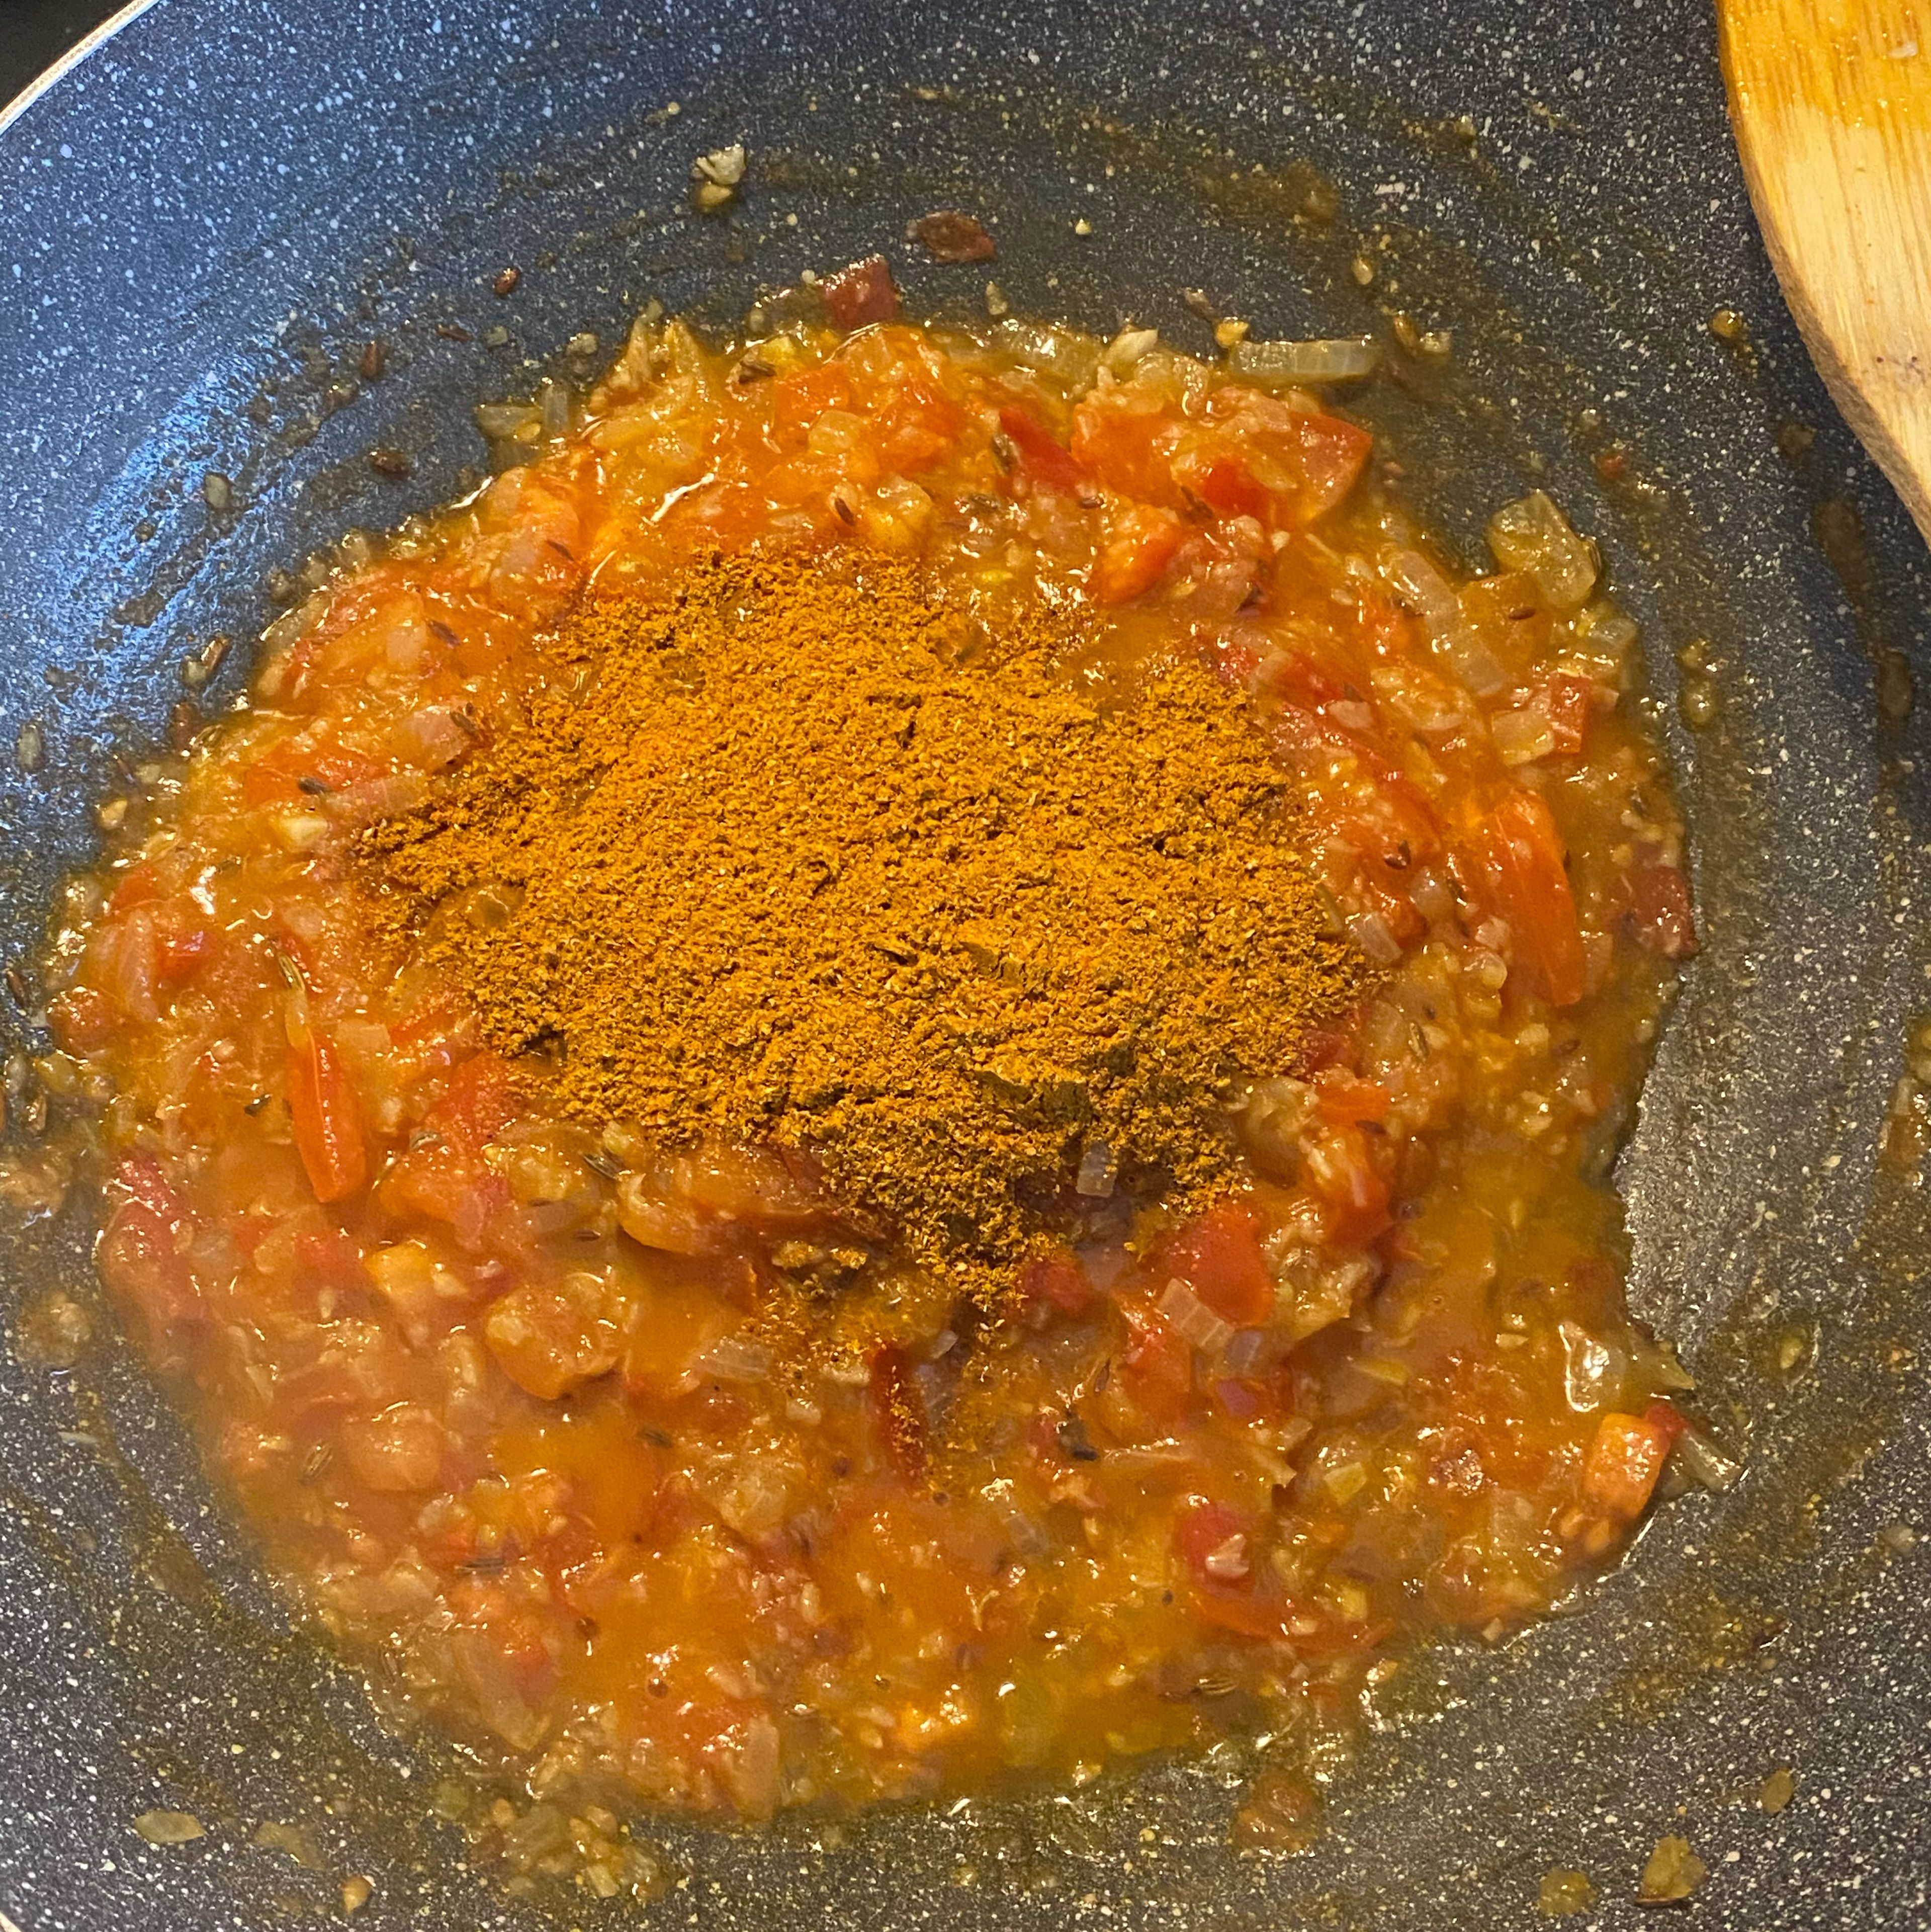 Sobald die Tomatenstückchen weich geworden sind, gebe die in Punkt 2 vorbereitete Gewürzmischung hinzu. Vermische alles gut miteinander und lasse es für ca. 1 Minute unter ständigem Rühren köcheln. (Sollte es zu trocken sein gebe etwas Wasser dazu.)